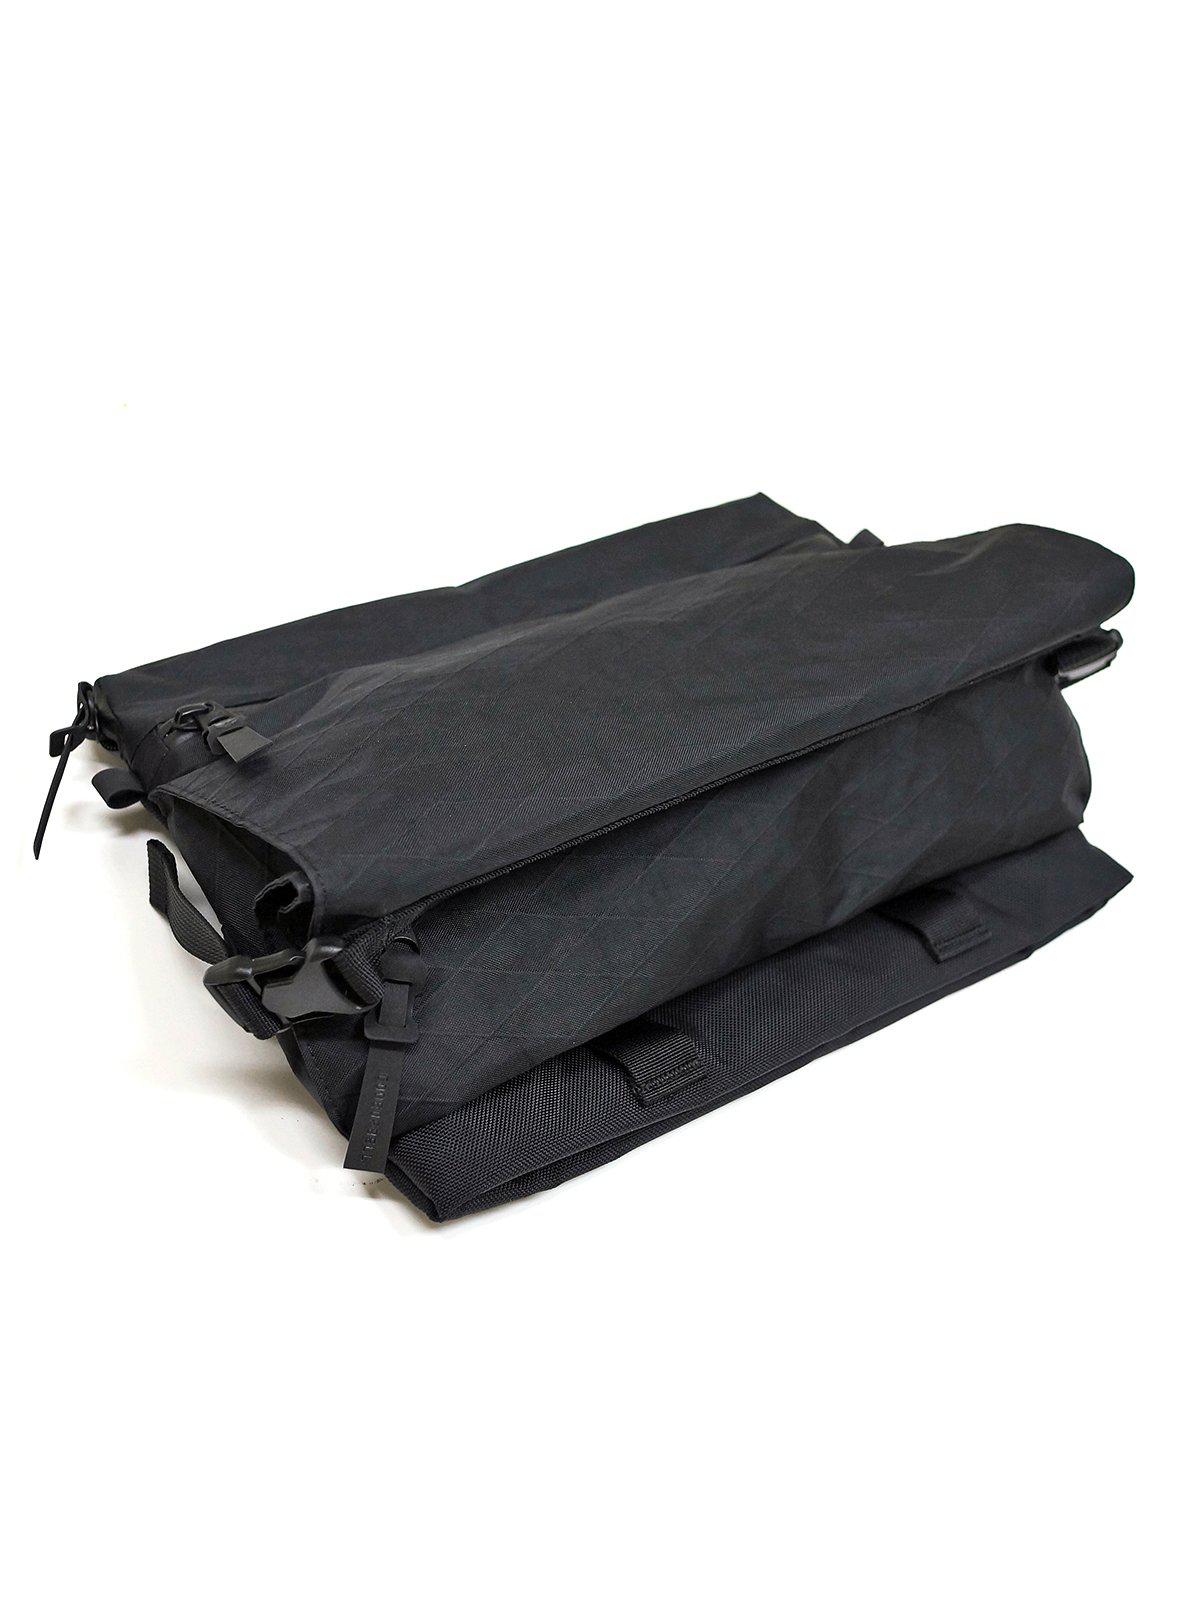 Code Of Bell ANNEX Liner Sacoche Sling Bag Multicam Black